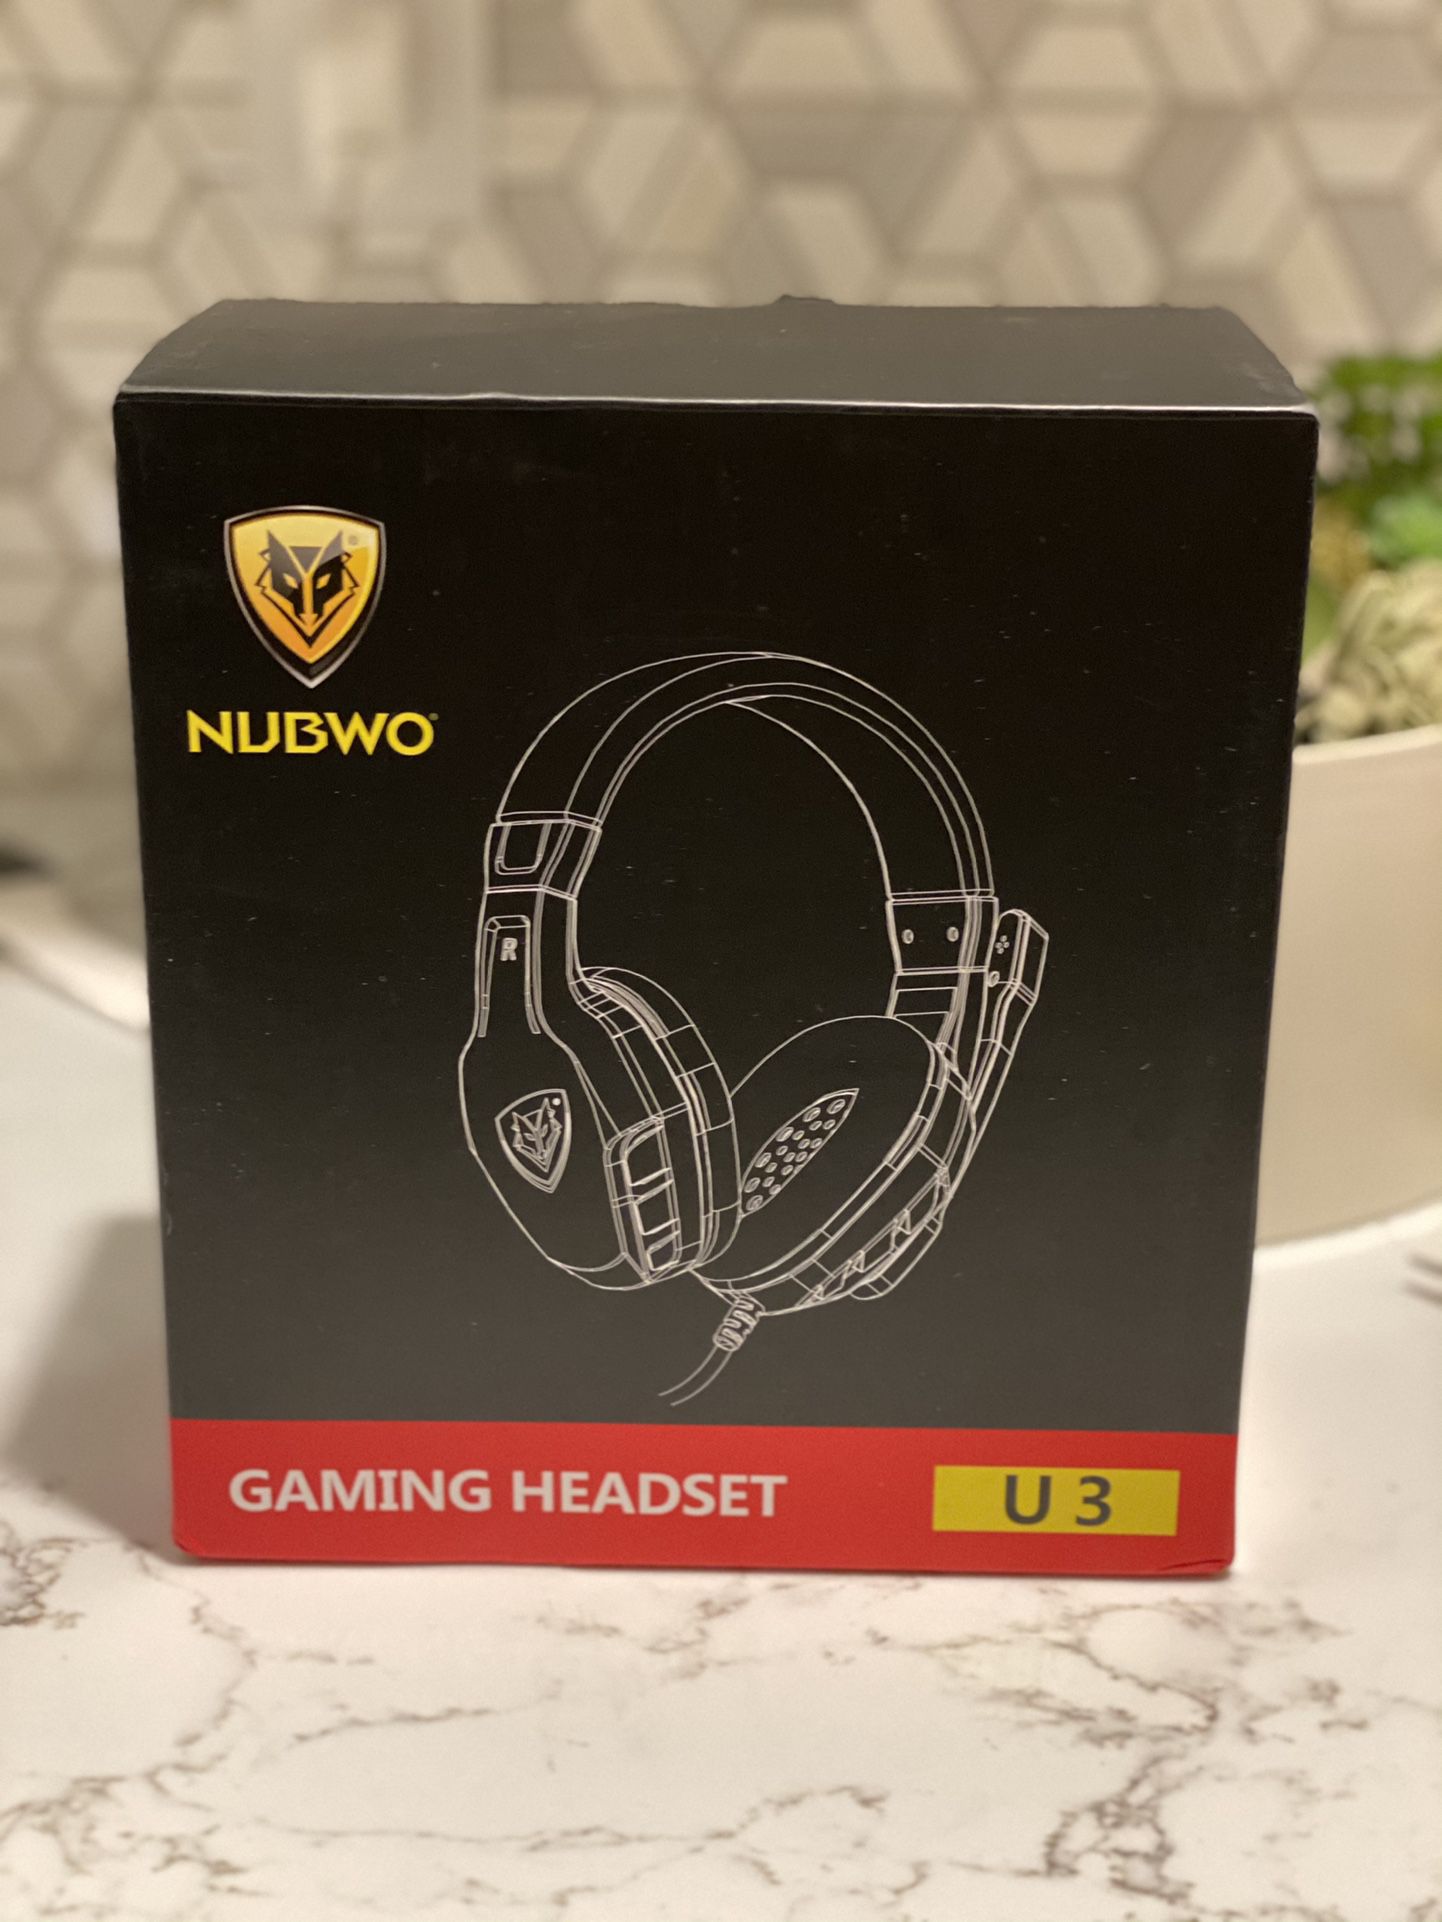 Gaming Headset - Nubwo U3